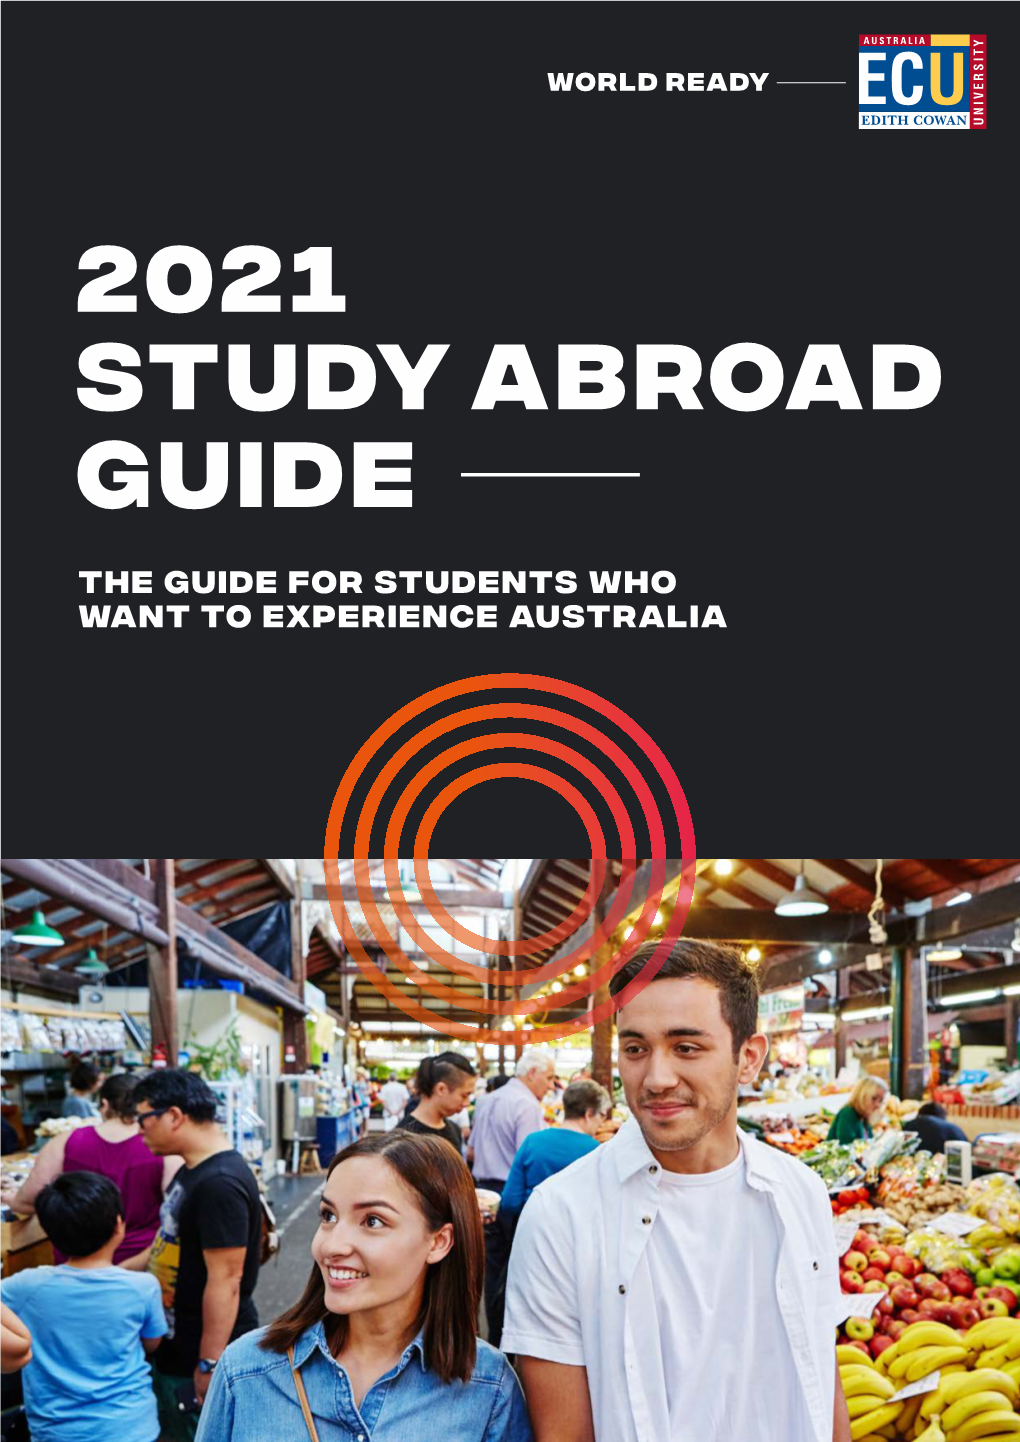 2021 ECU Study Abroad Guide